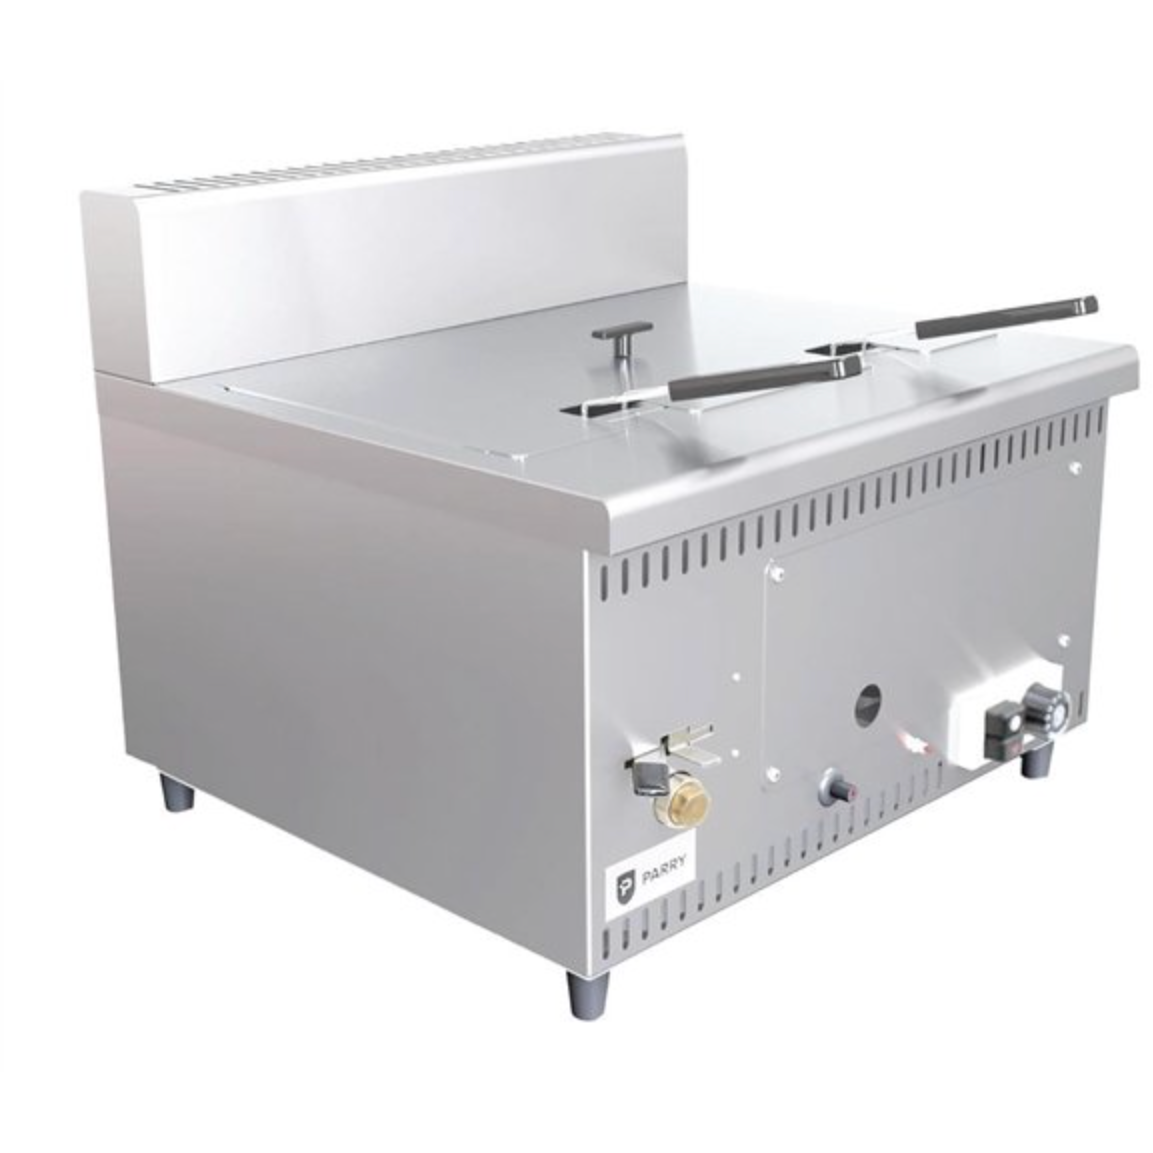 Parry AGFP LPG Gas Countertop Fryer 5.8kW